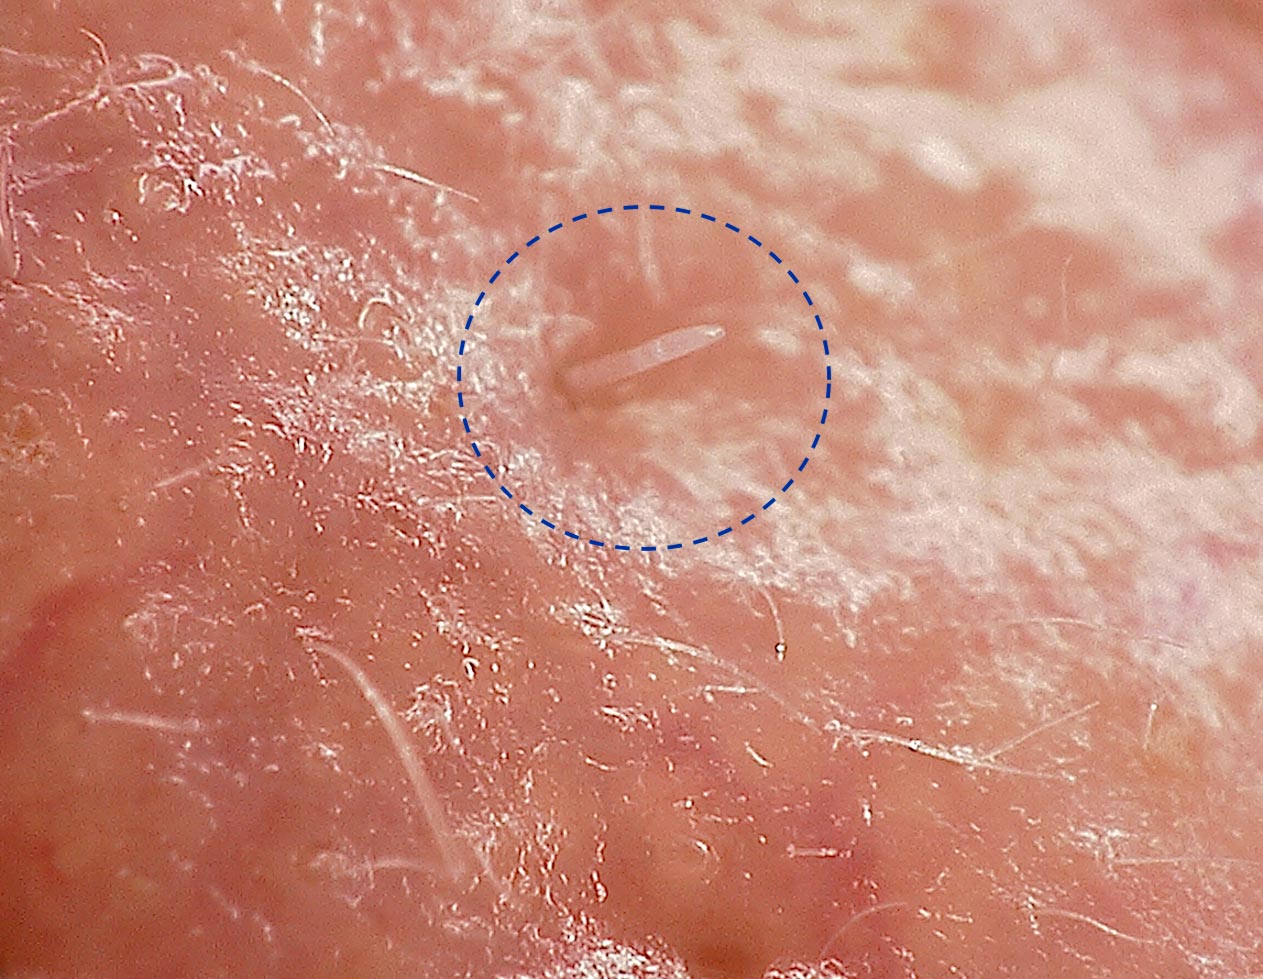 Demodex folliculorum Mite on Skin